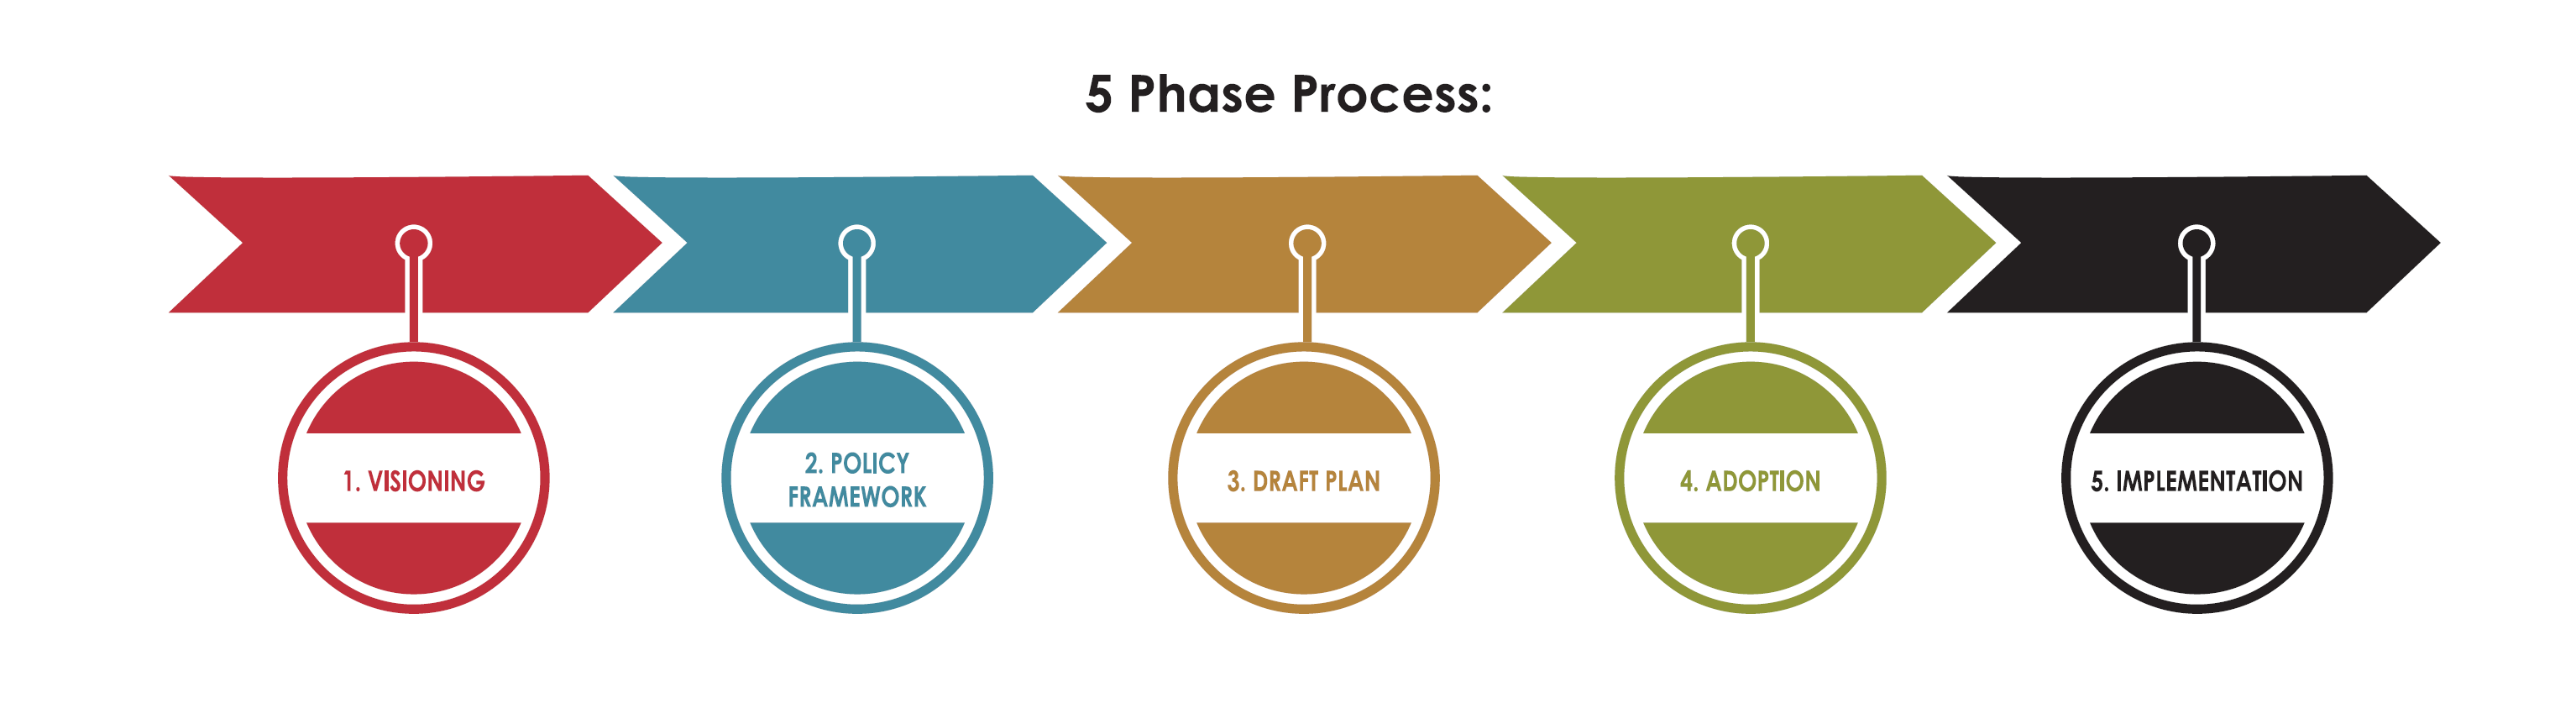 5 Phase Process, Phase 1: Visioning, Phase 2: Policy Framework, Phase 3: Draft Plan, Phase 4: Adoption, Phase 5: Implementation